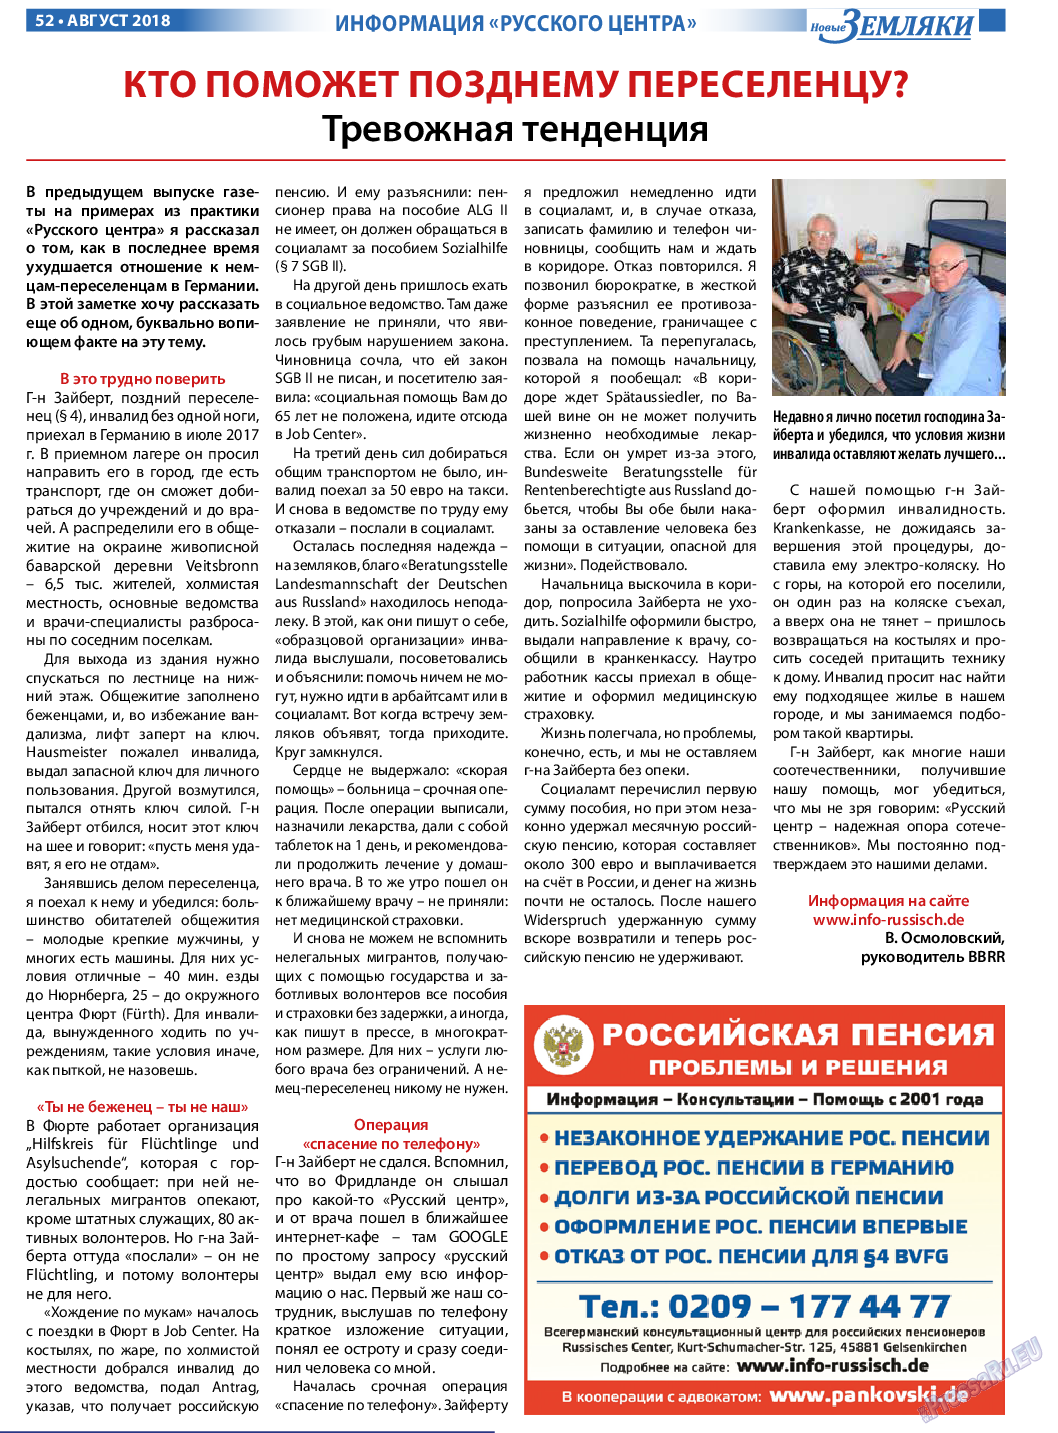 Новые Земляки, газета. 2018 №8 стр.52